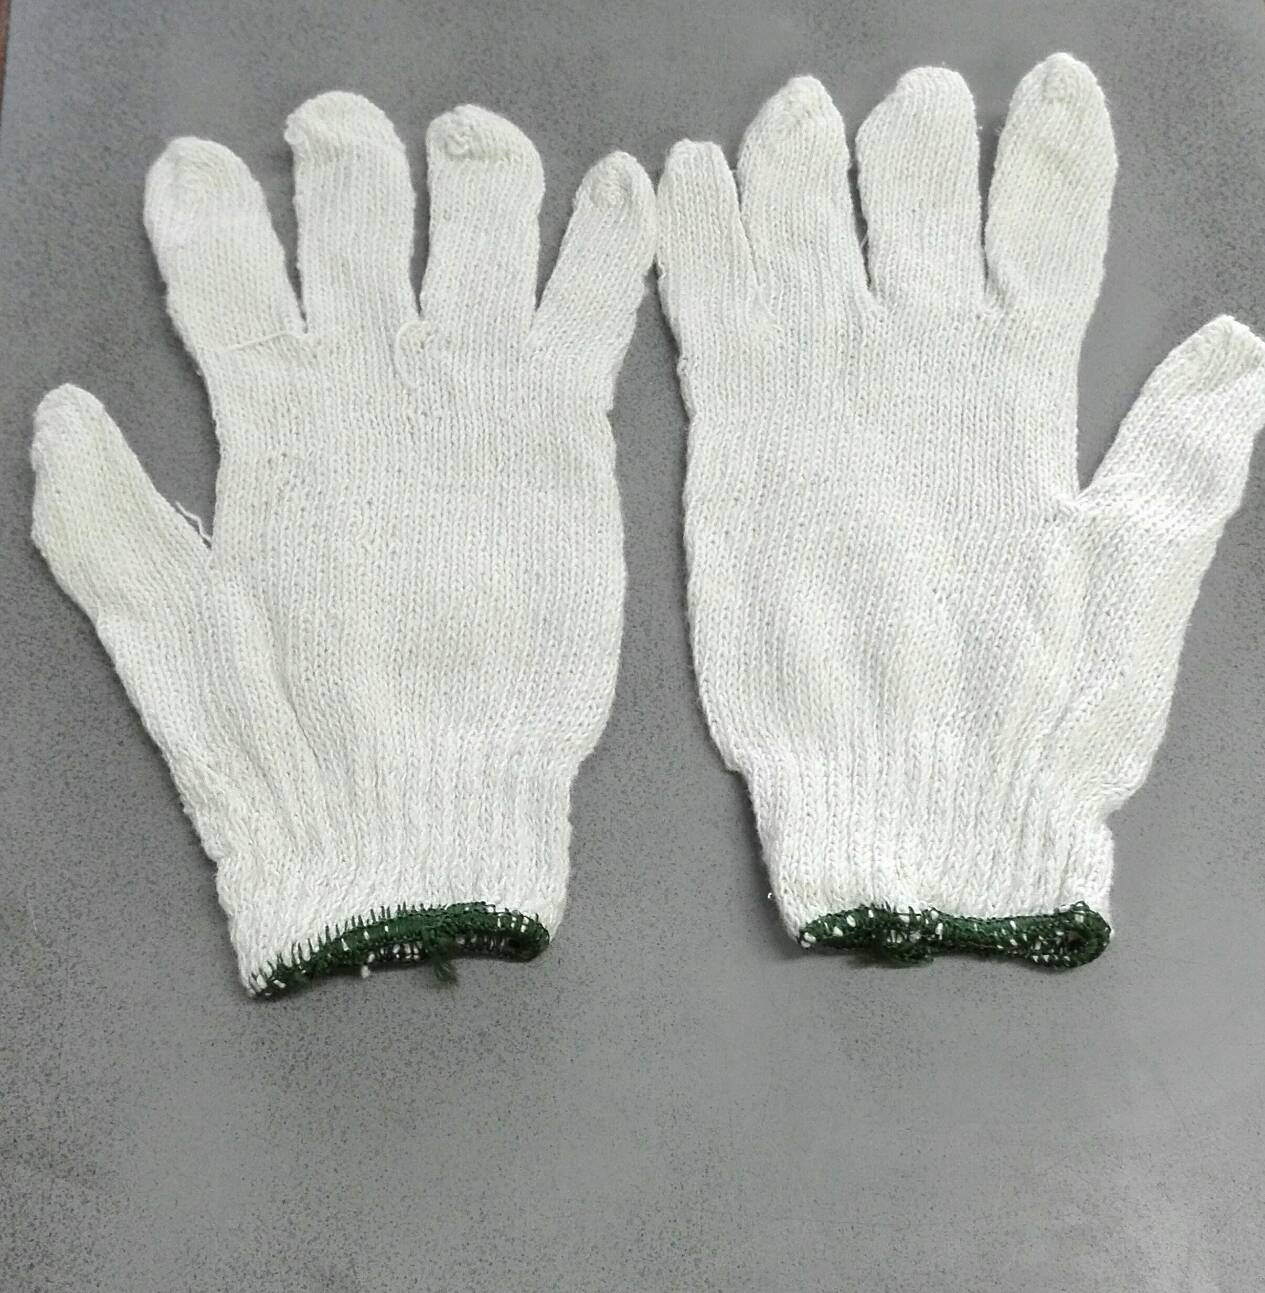 ถุงมือผ้า ขอบเขียว